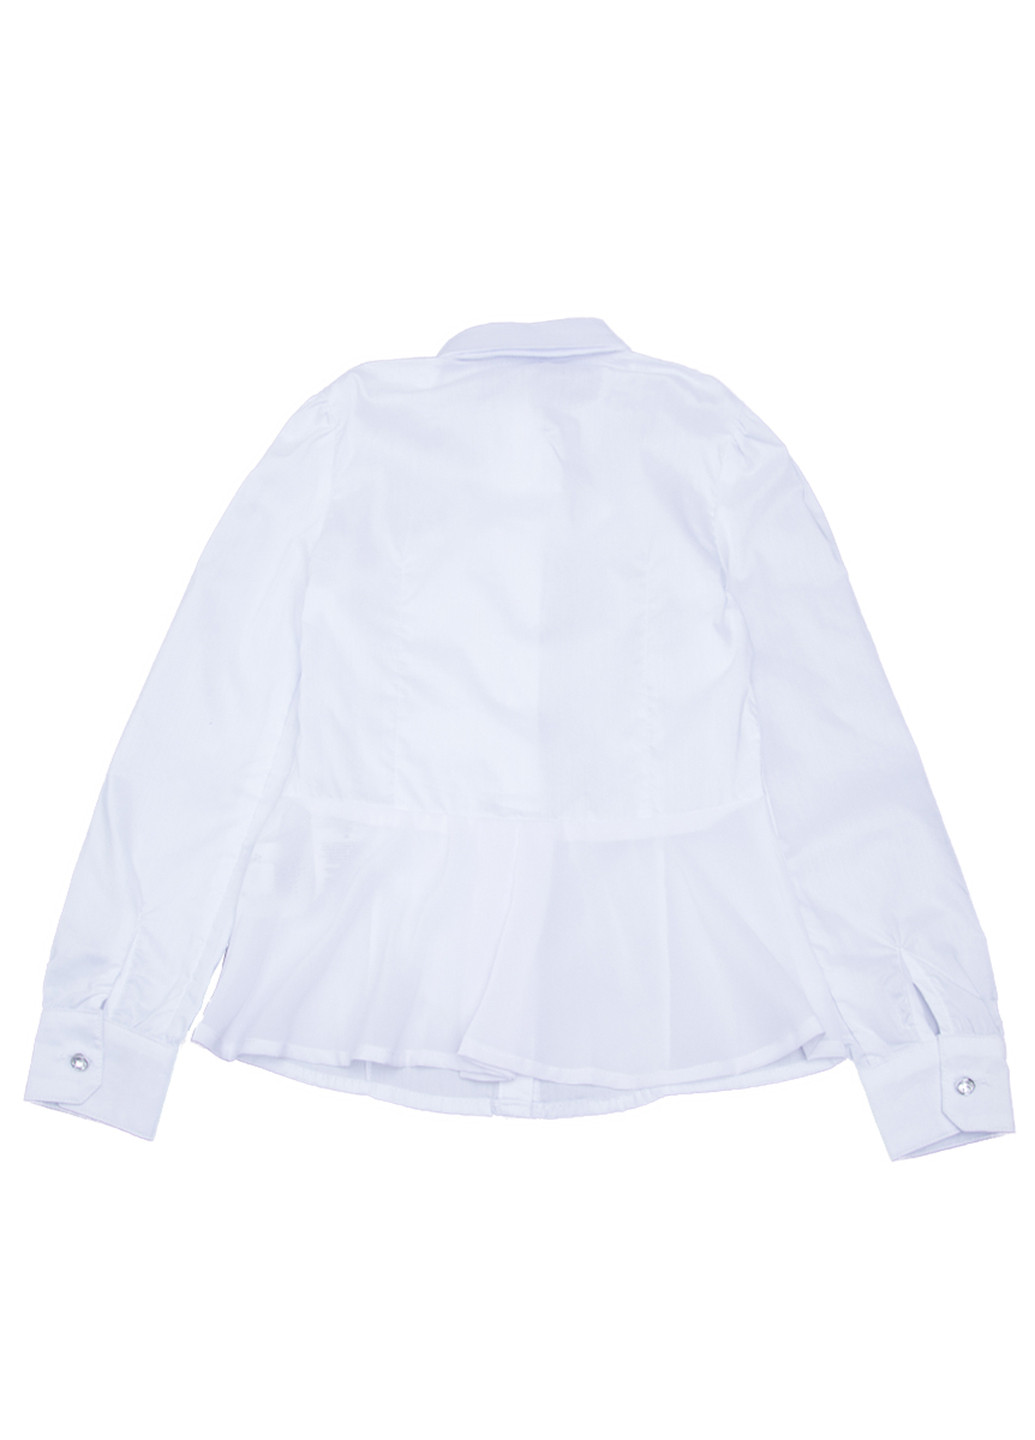 Белая однотонная блузка с длинным рукавом Pinetti демисезонная